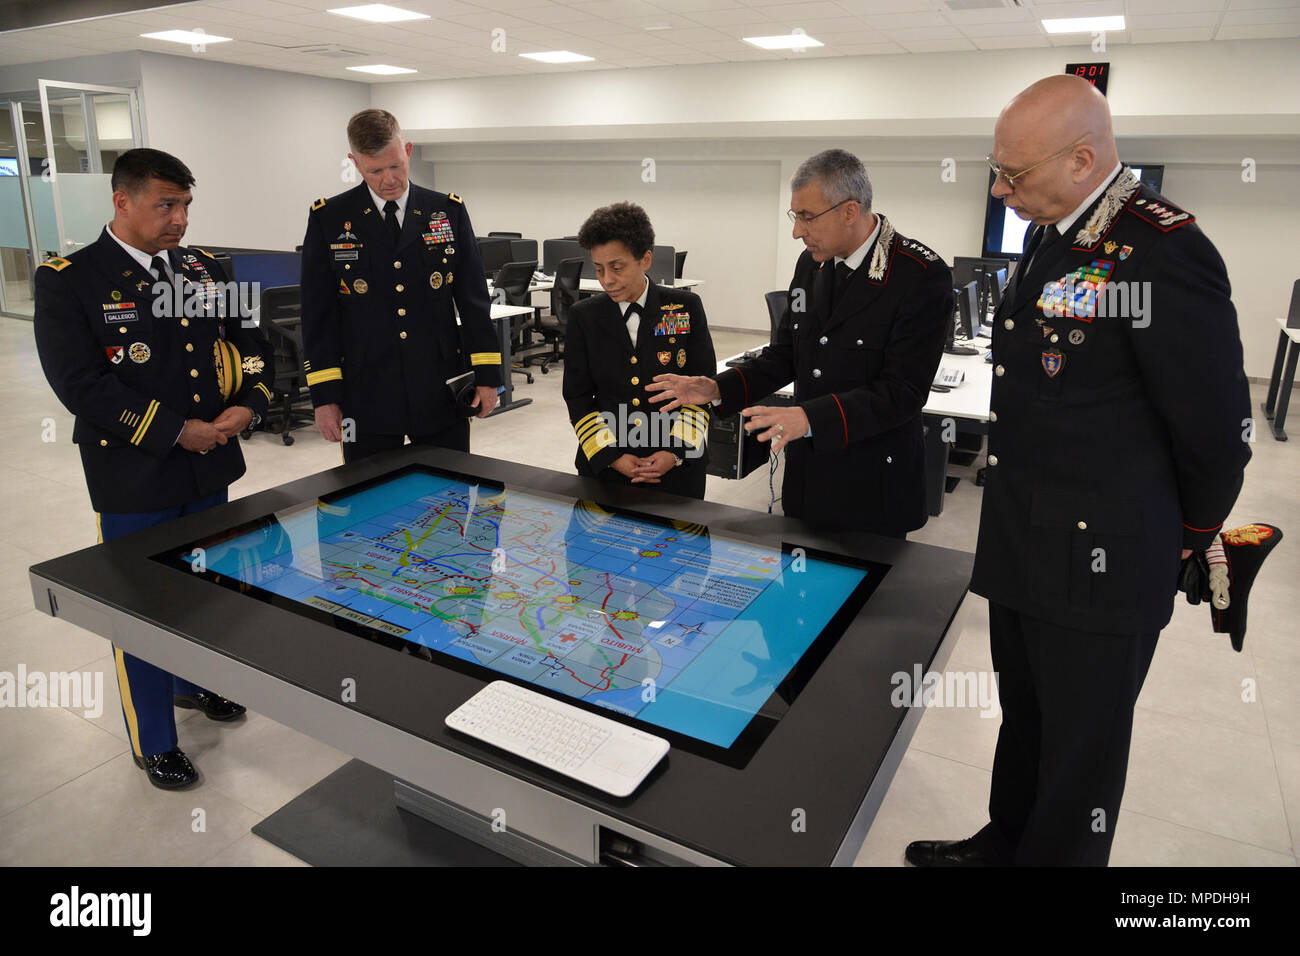 Almirante Michelle Howard, Comandante de la OTAN JFC-Nápoles, observa la habitación área de formación "Magistra" durante la visita al centro de excelencia para unidades de policía de estabilidad (CoESPU) Vicenza, 10 de abril de 2017. Foto de stock